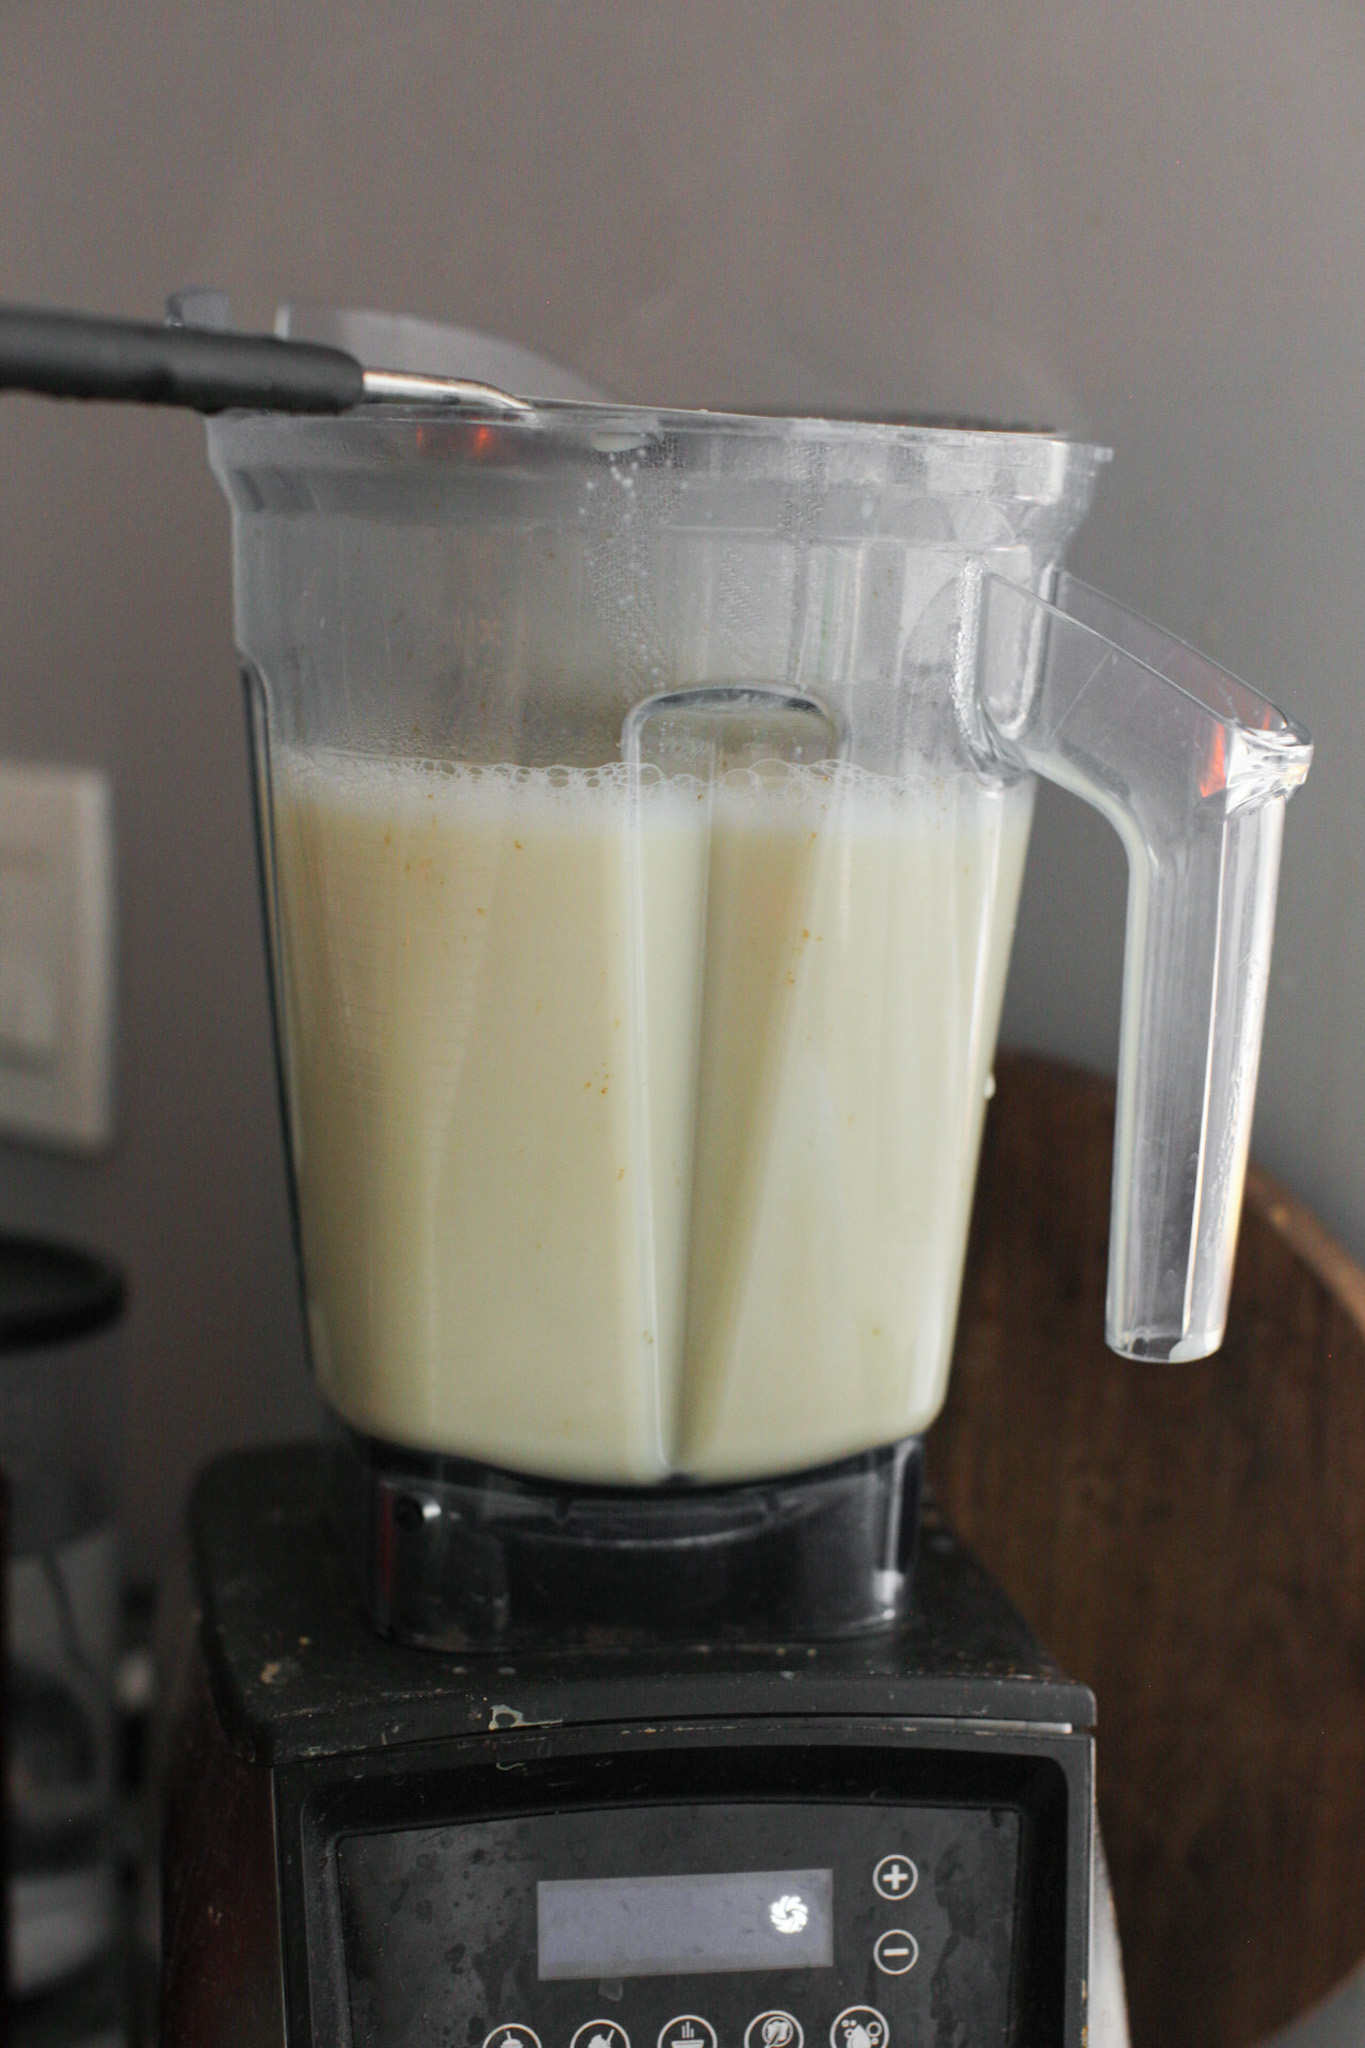 blending homemamde soy milk